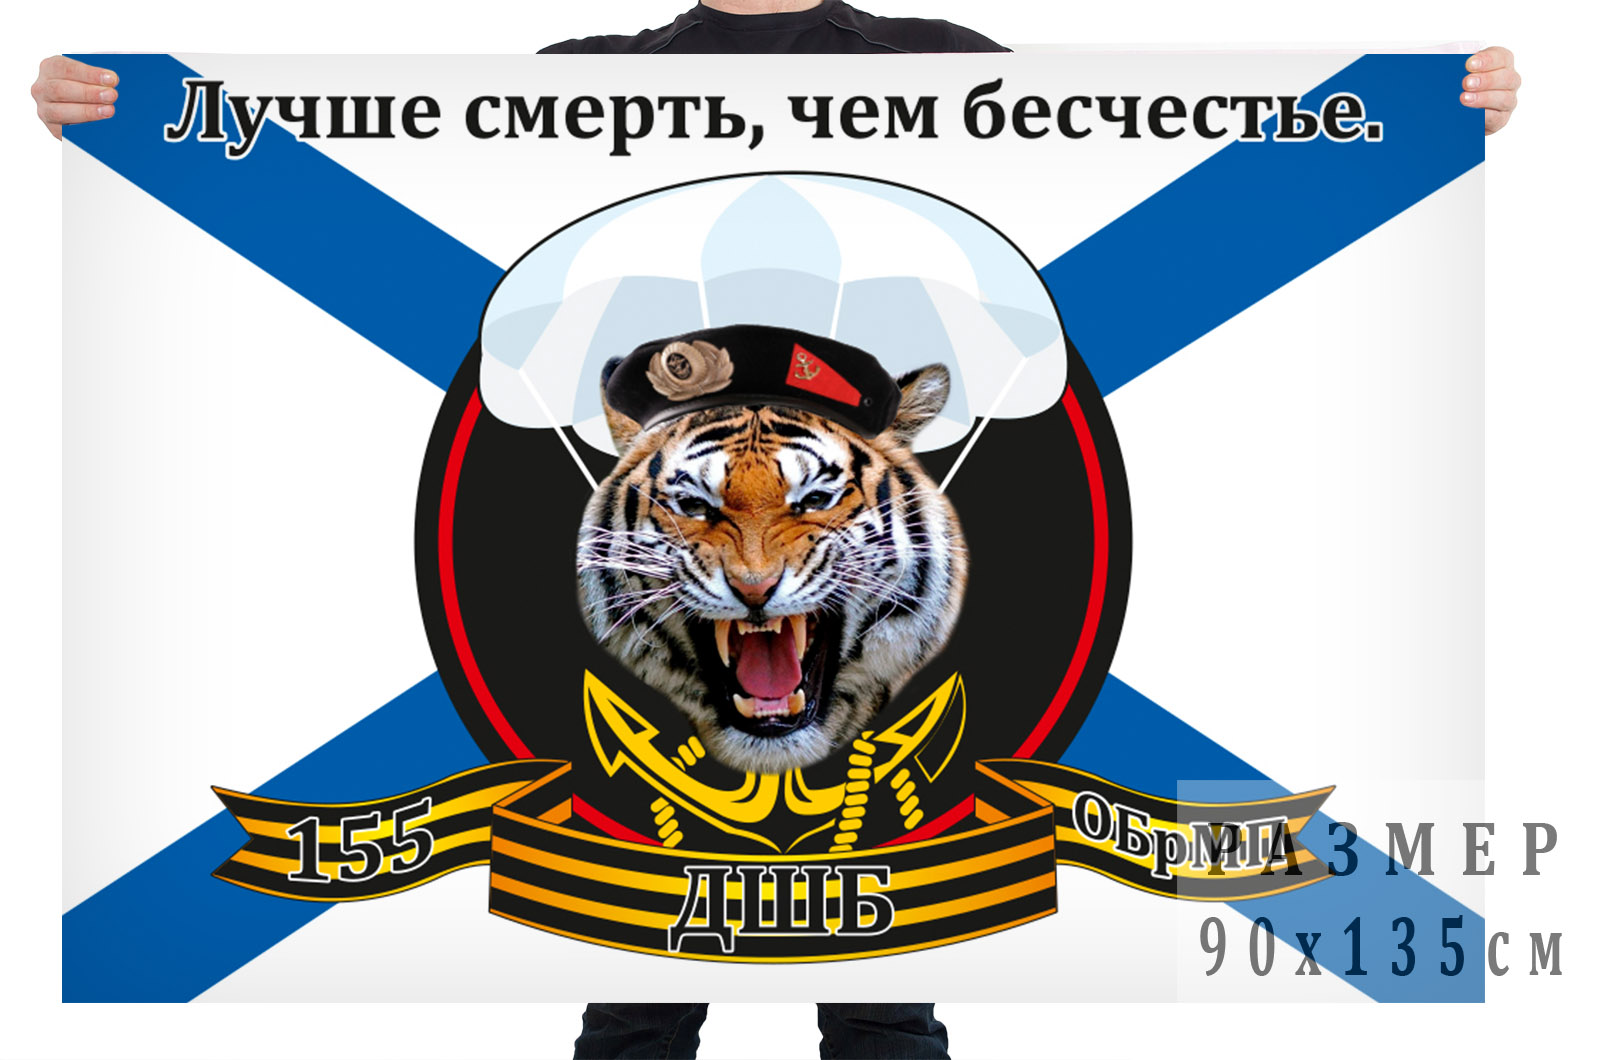 Флаг десантно-штурмового батальона 155 отдельной бригады морской пехоты 